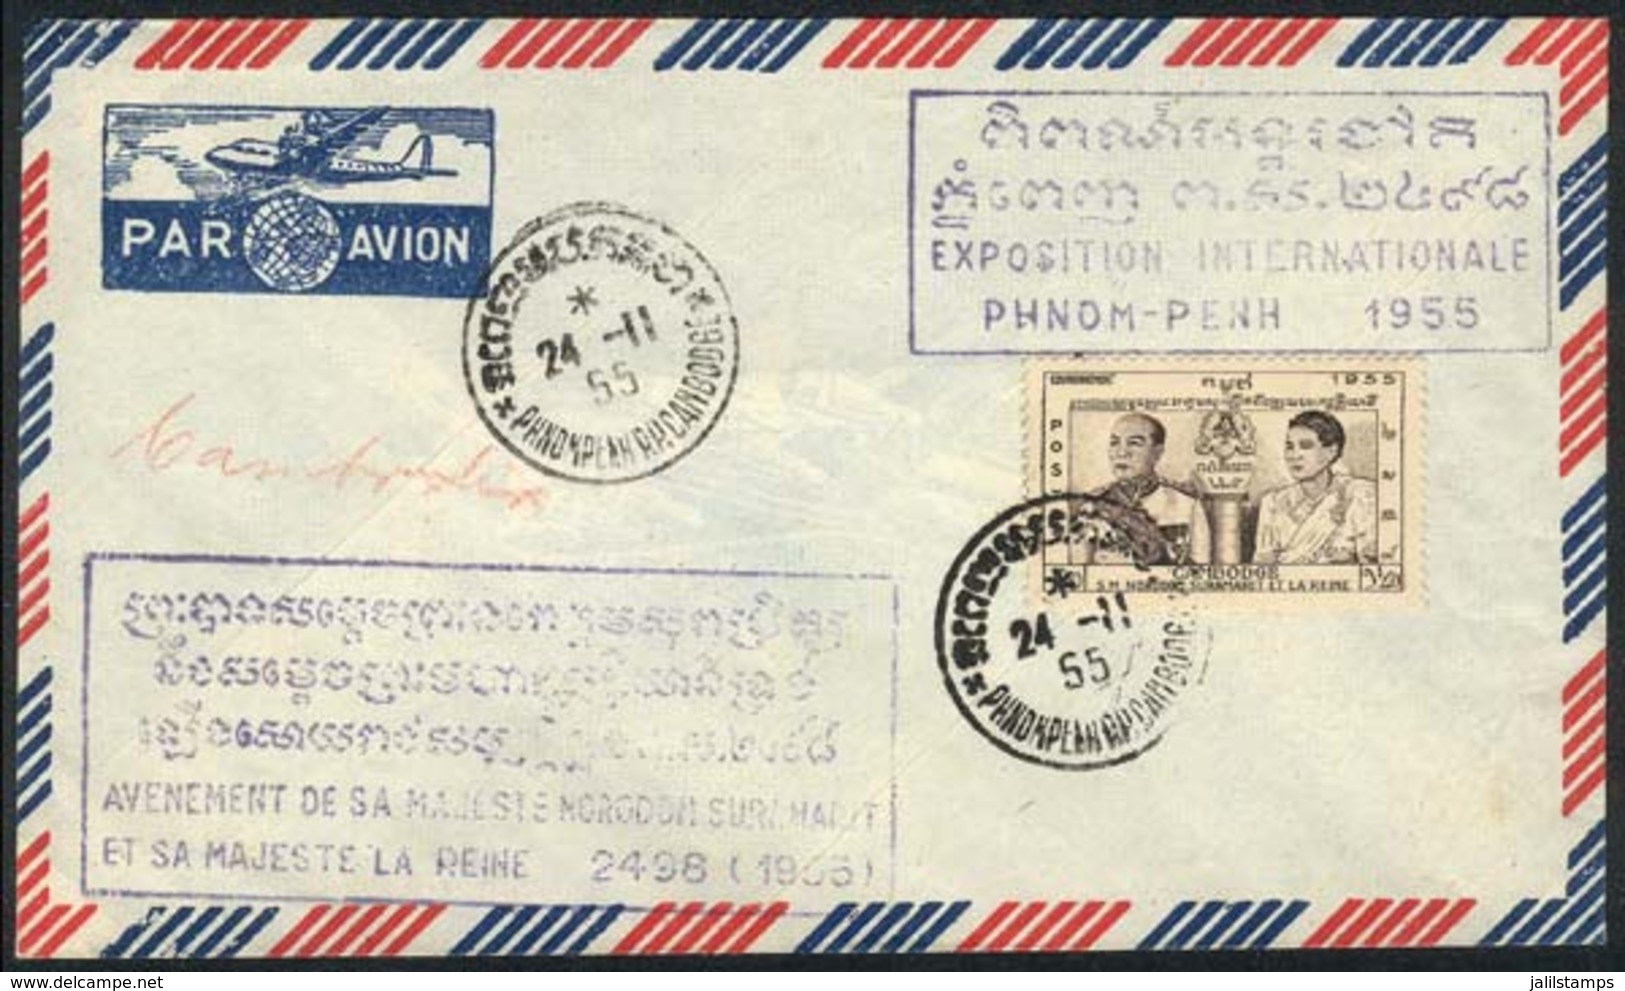 CAMBODIA: Cover With Commemorative Cachet Of The Phnom-Penh Intl. Philatelic Expo, 24/NO/1955, VF! - Cambodge